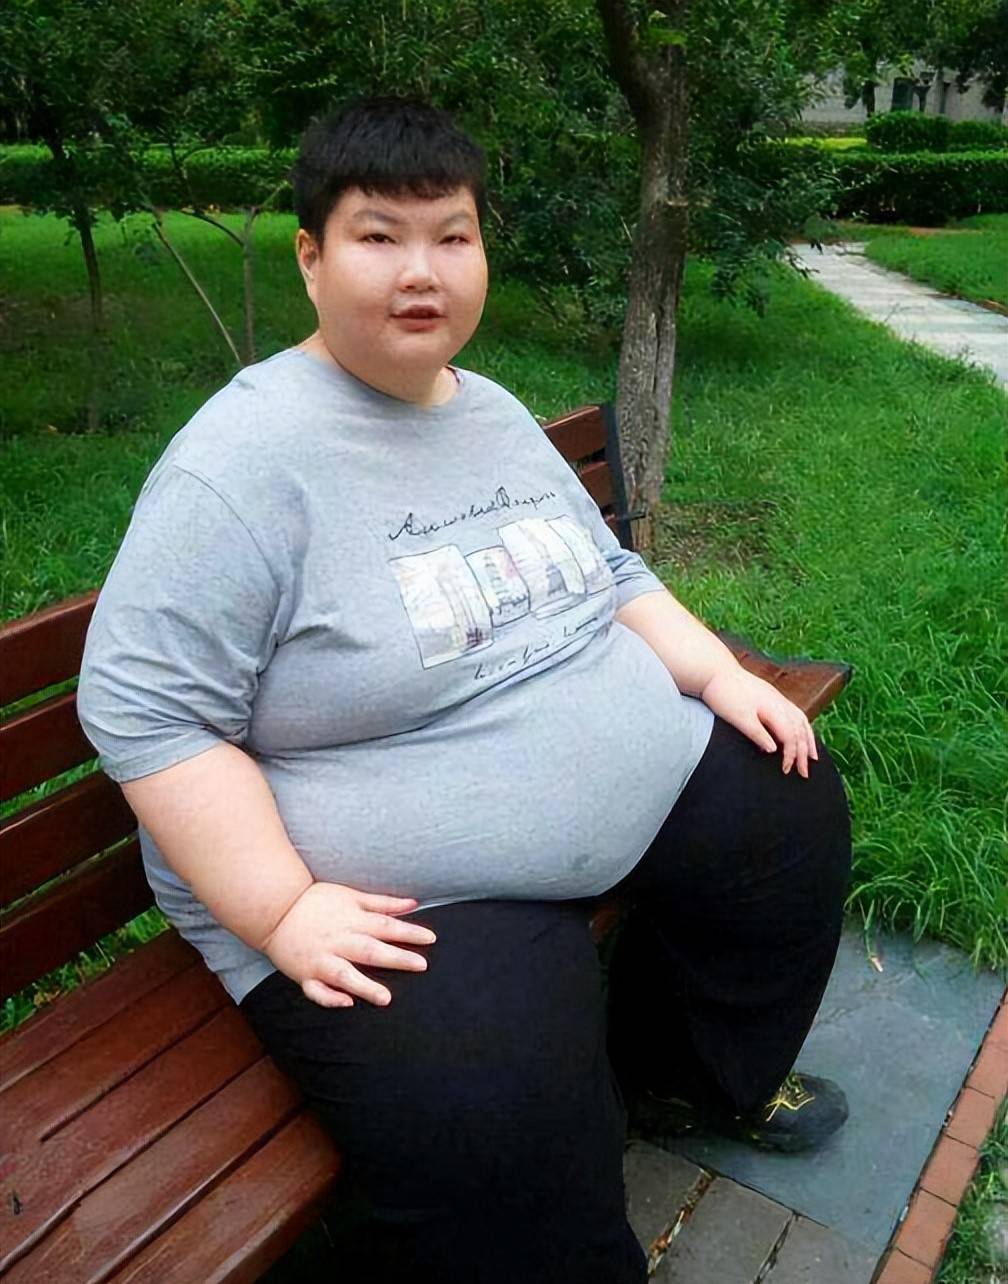 原创食欲真是由基因决定的江西男孩一顿十几碗饭体重暴涨到300斤